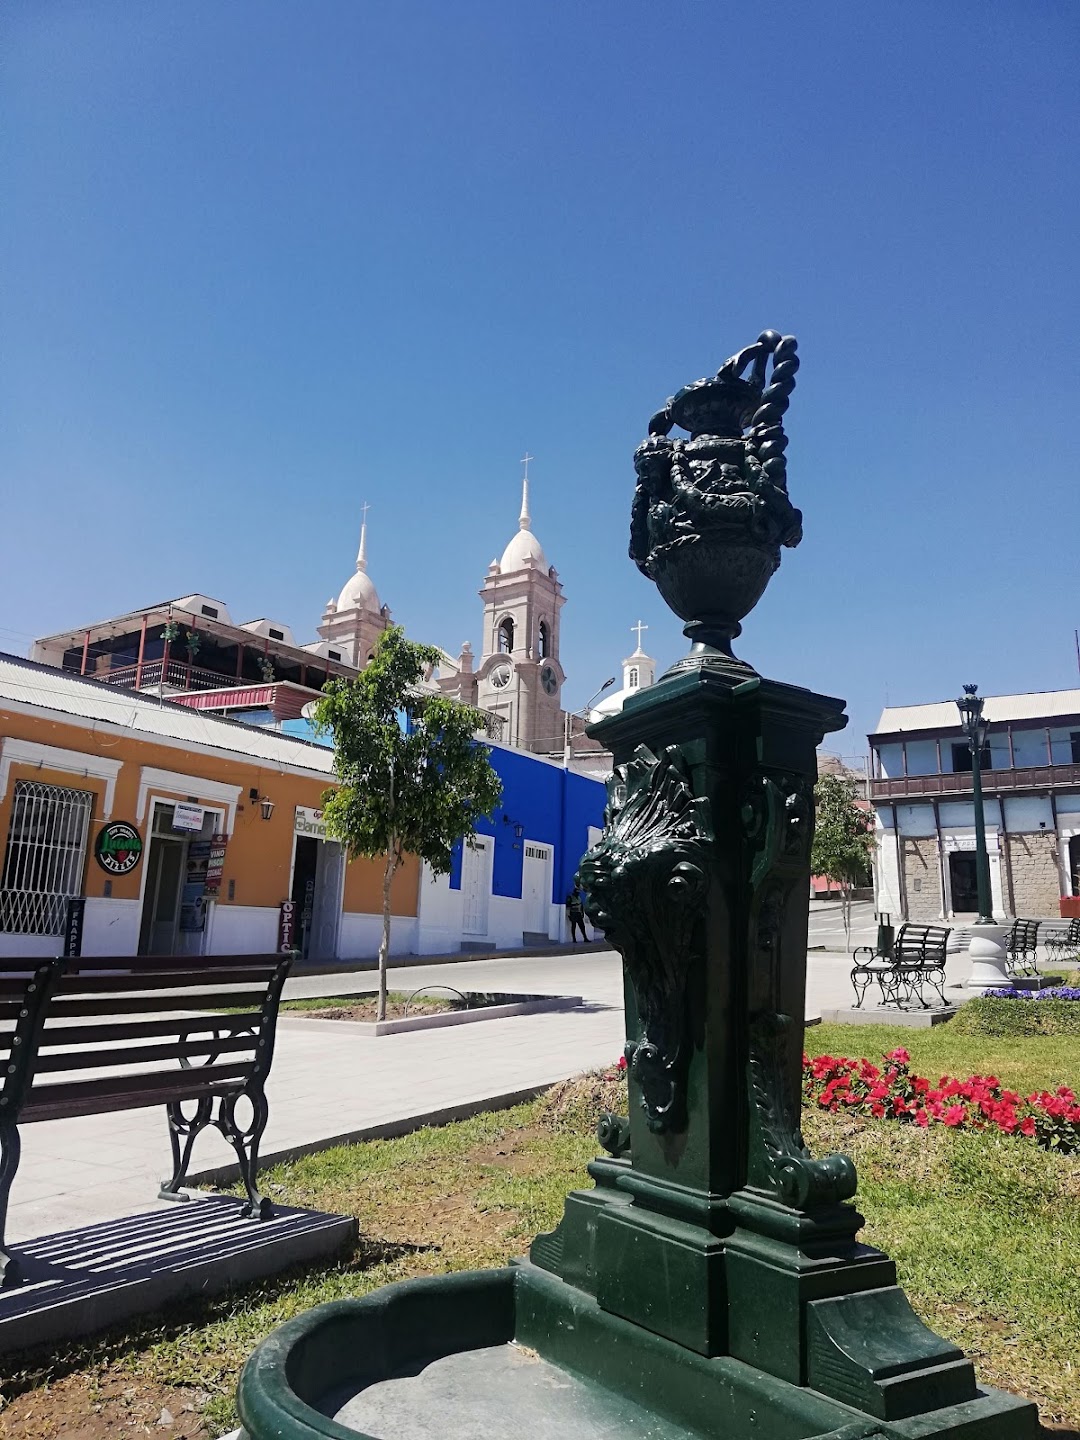 Turismo San Cristobal Moquegua